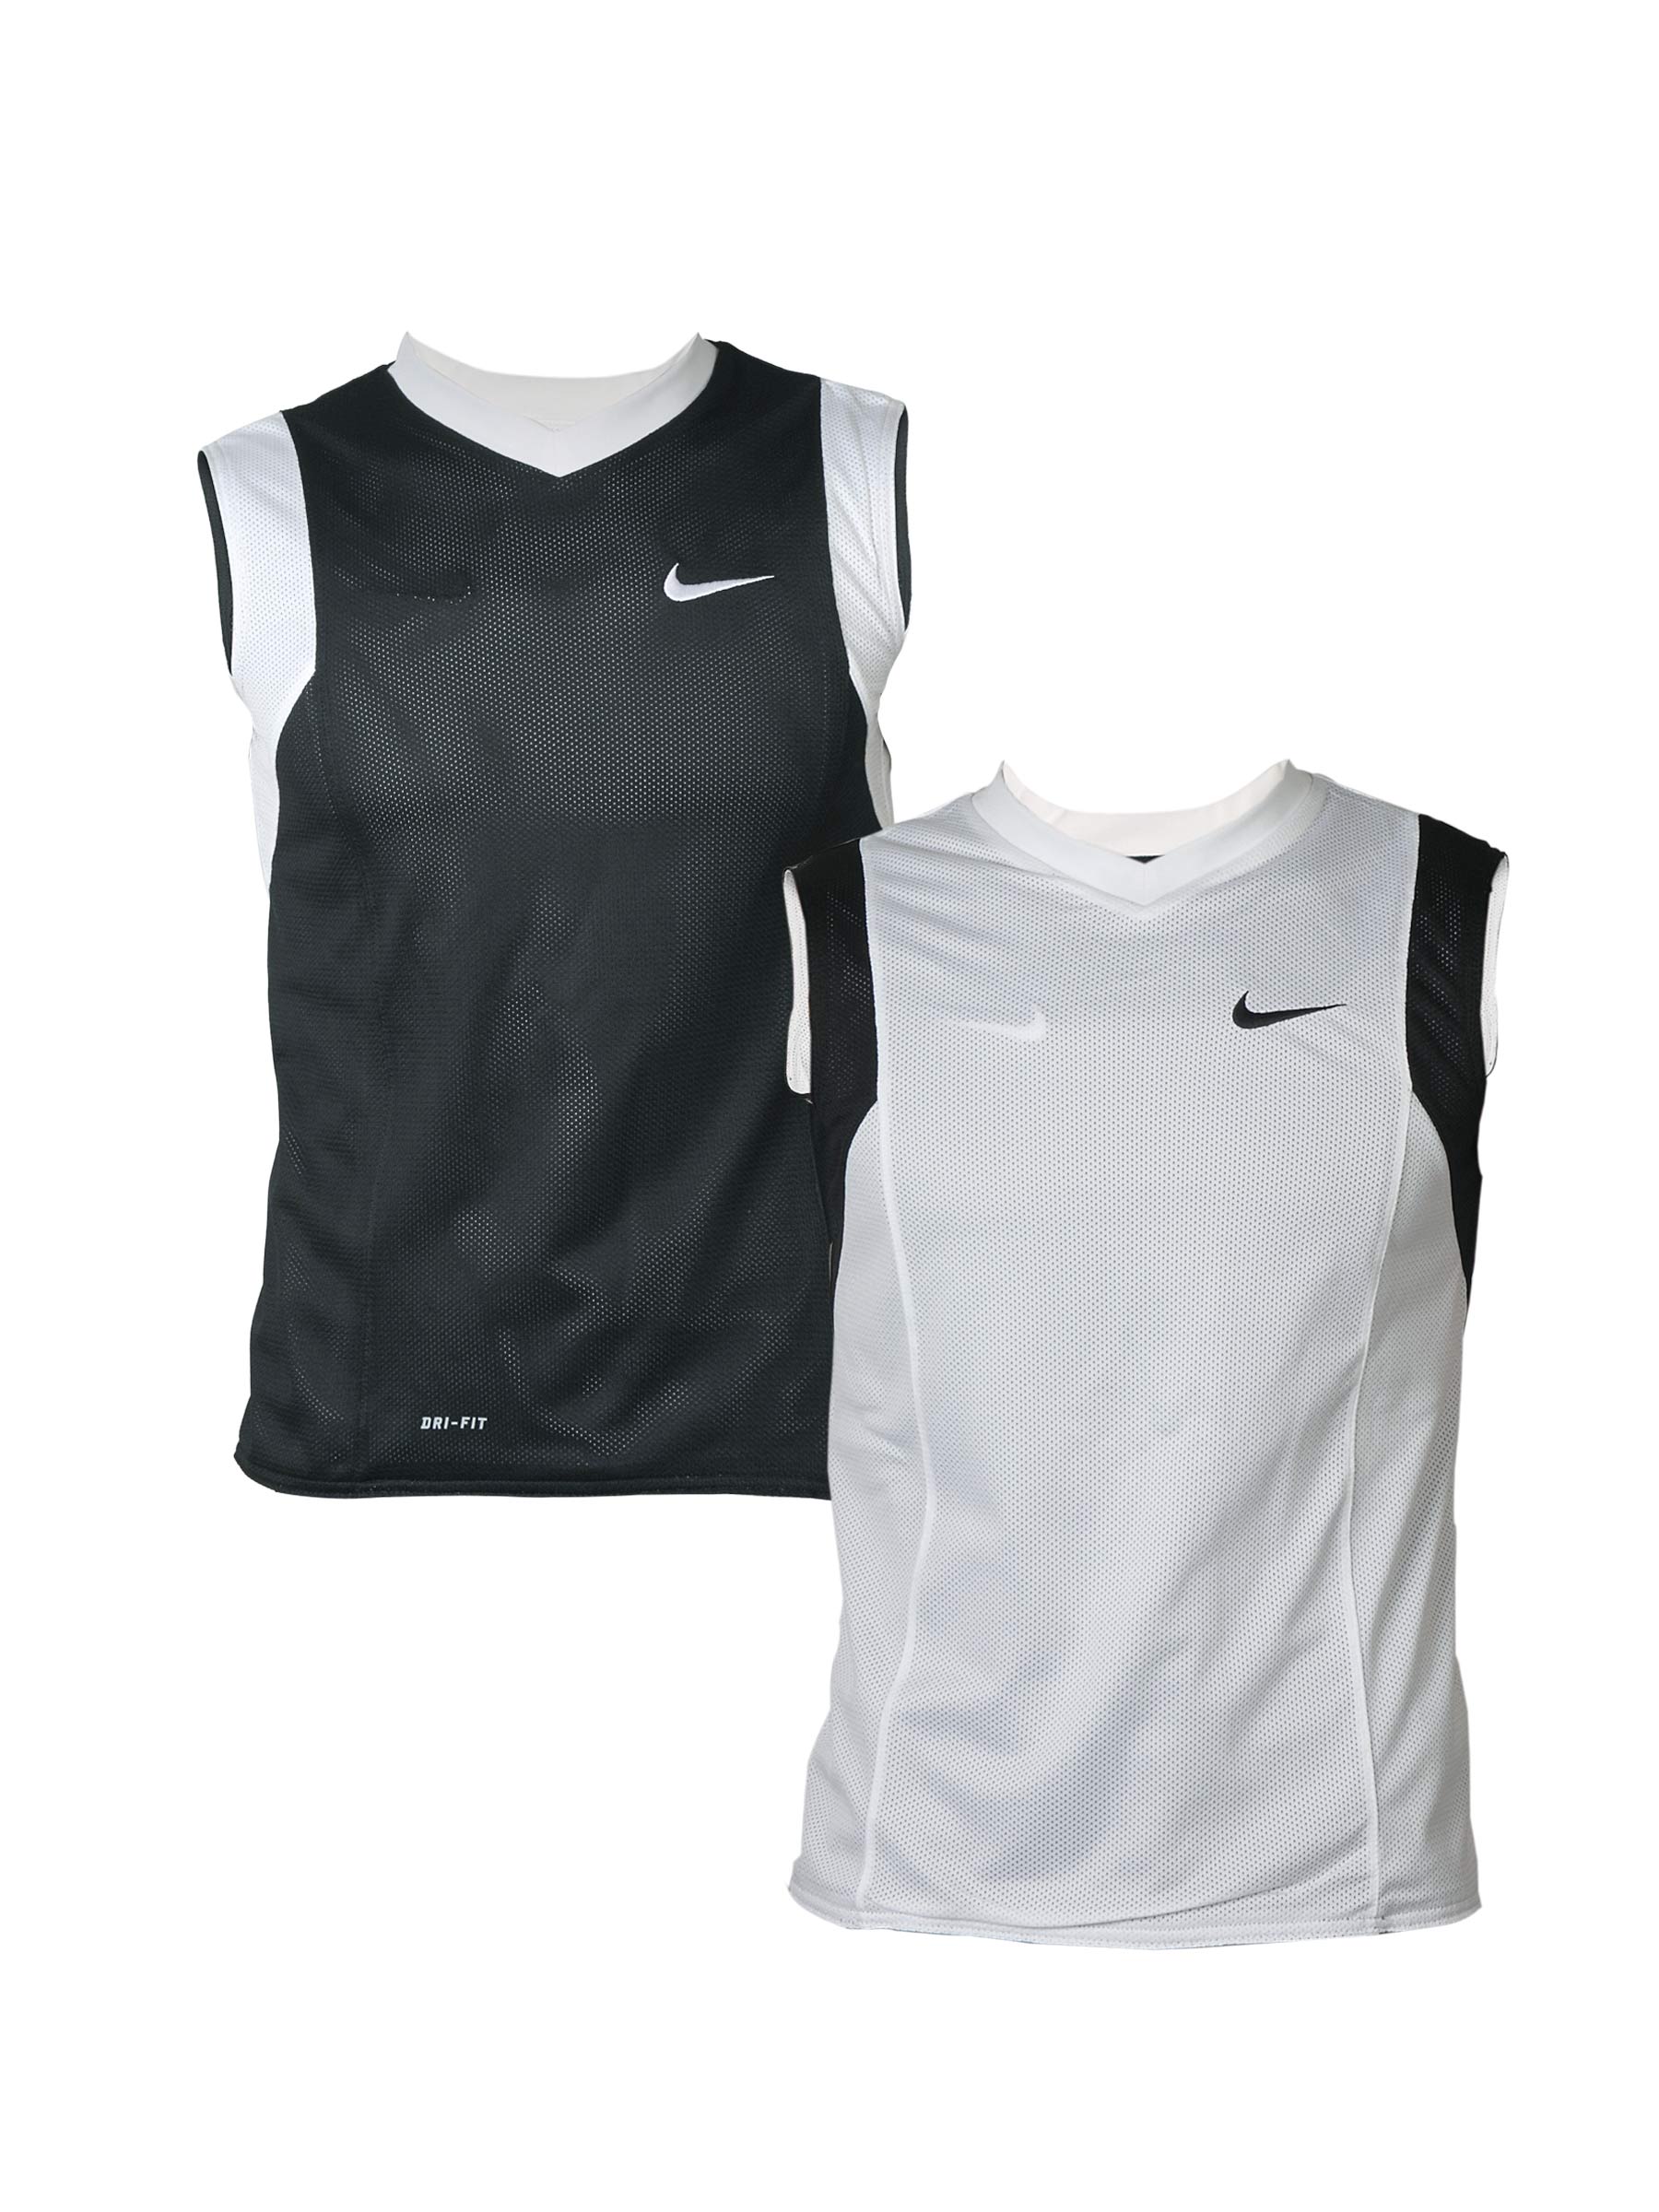 Nike Boys Black & White Reversible T-shirt